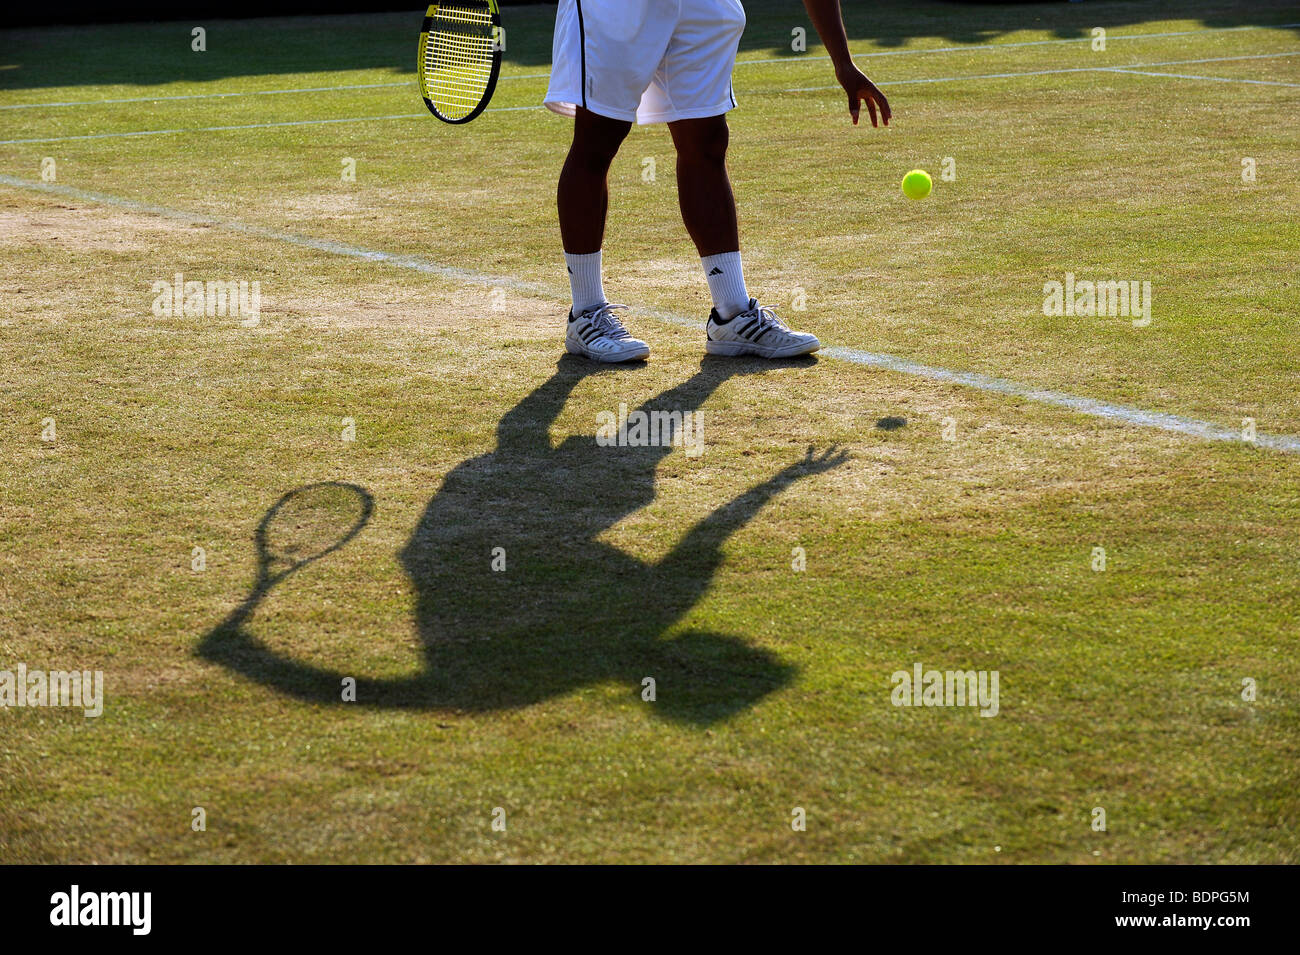 Un joueur et l'ombre qu'il fait rebondir le ballon avant de servir au cours de l'édition 2009 des Championnats de tennis de Wimbledon Banque D'Images